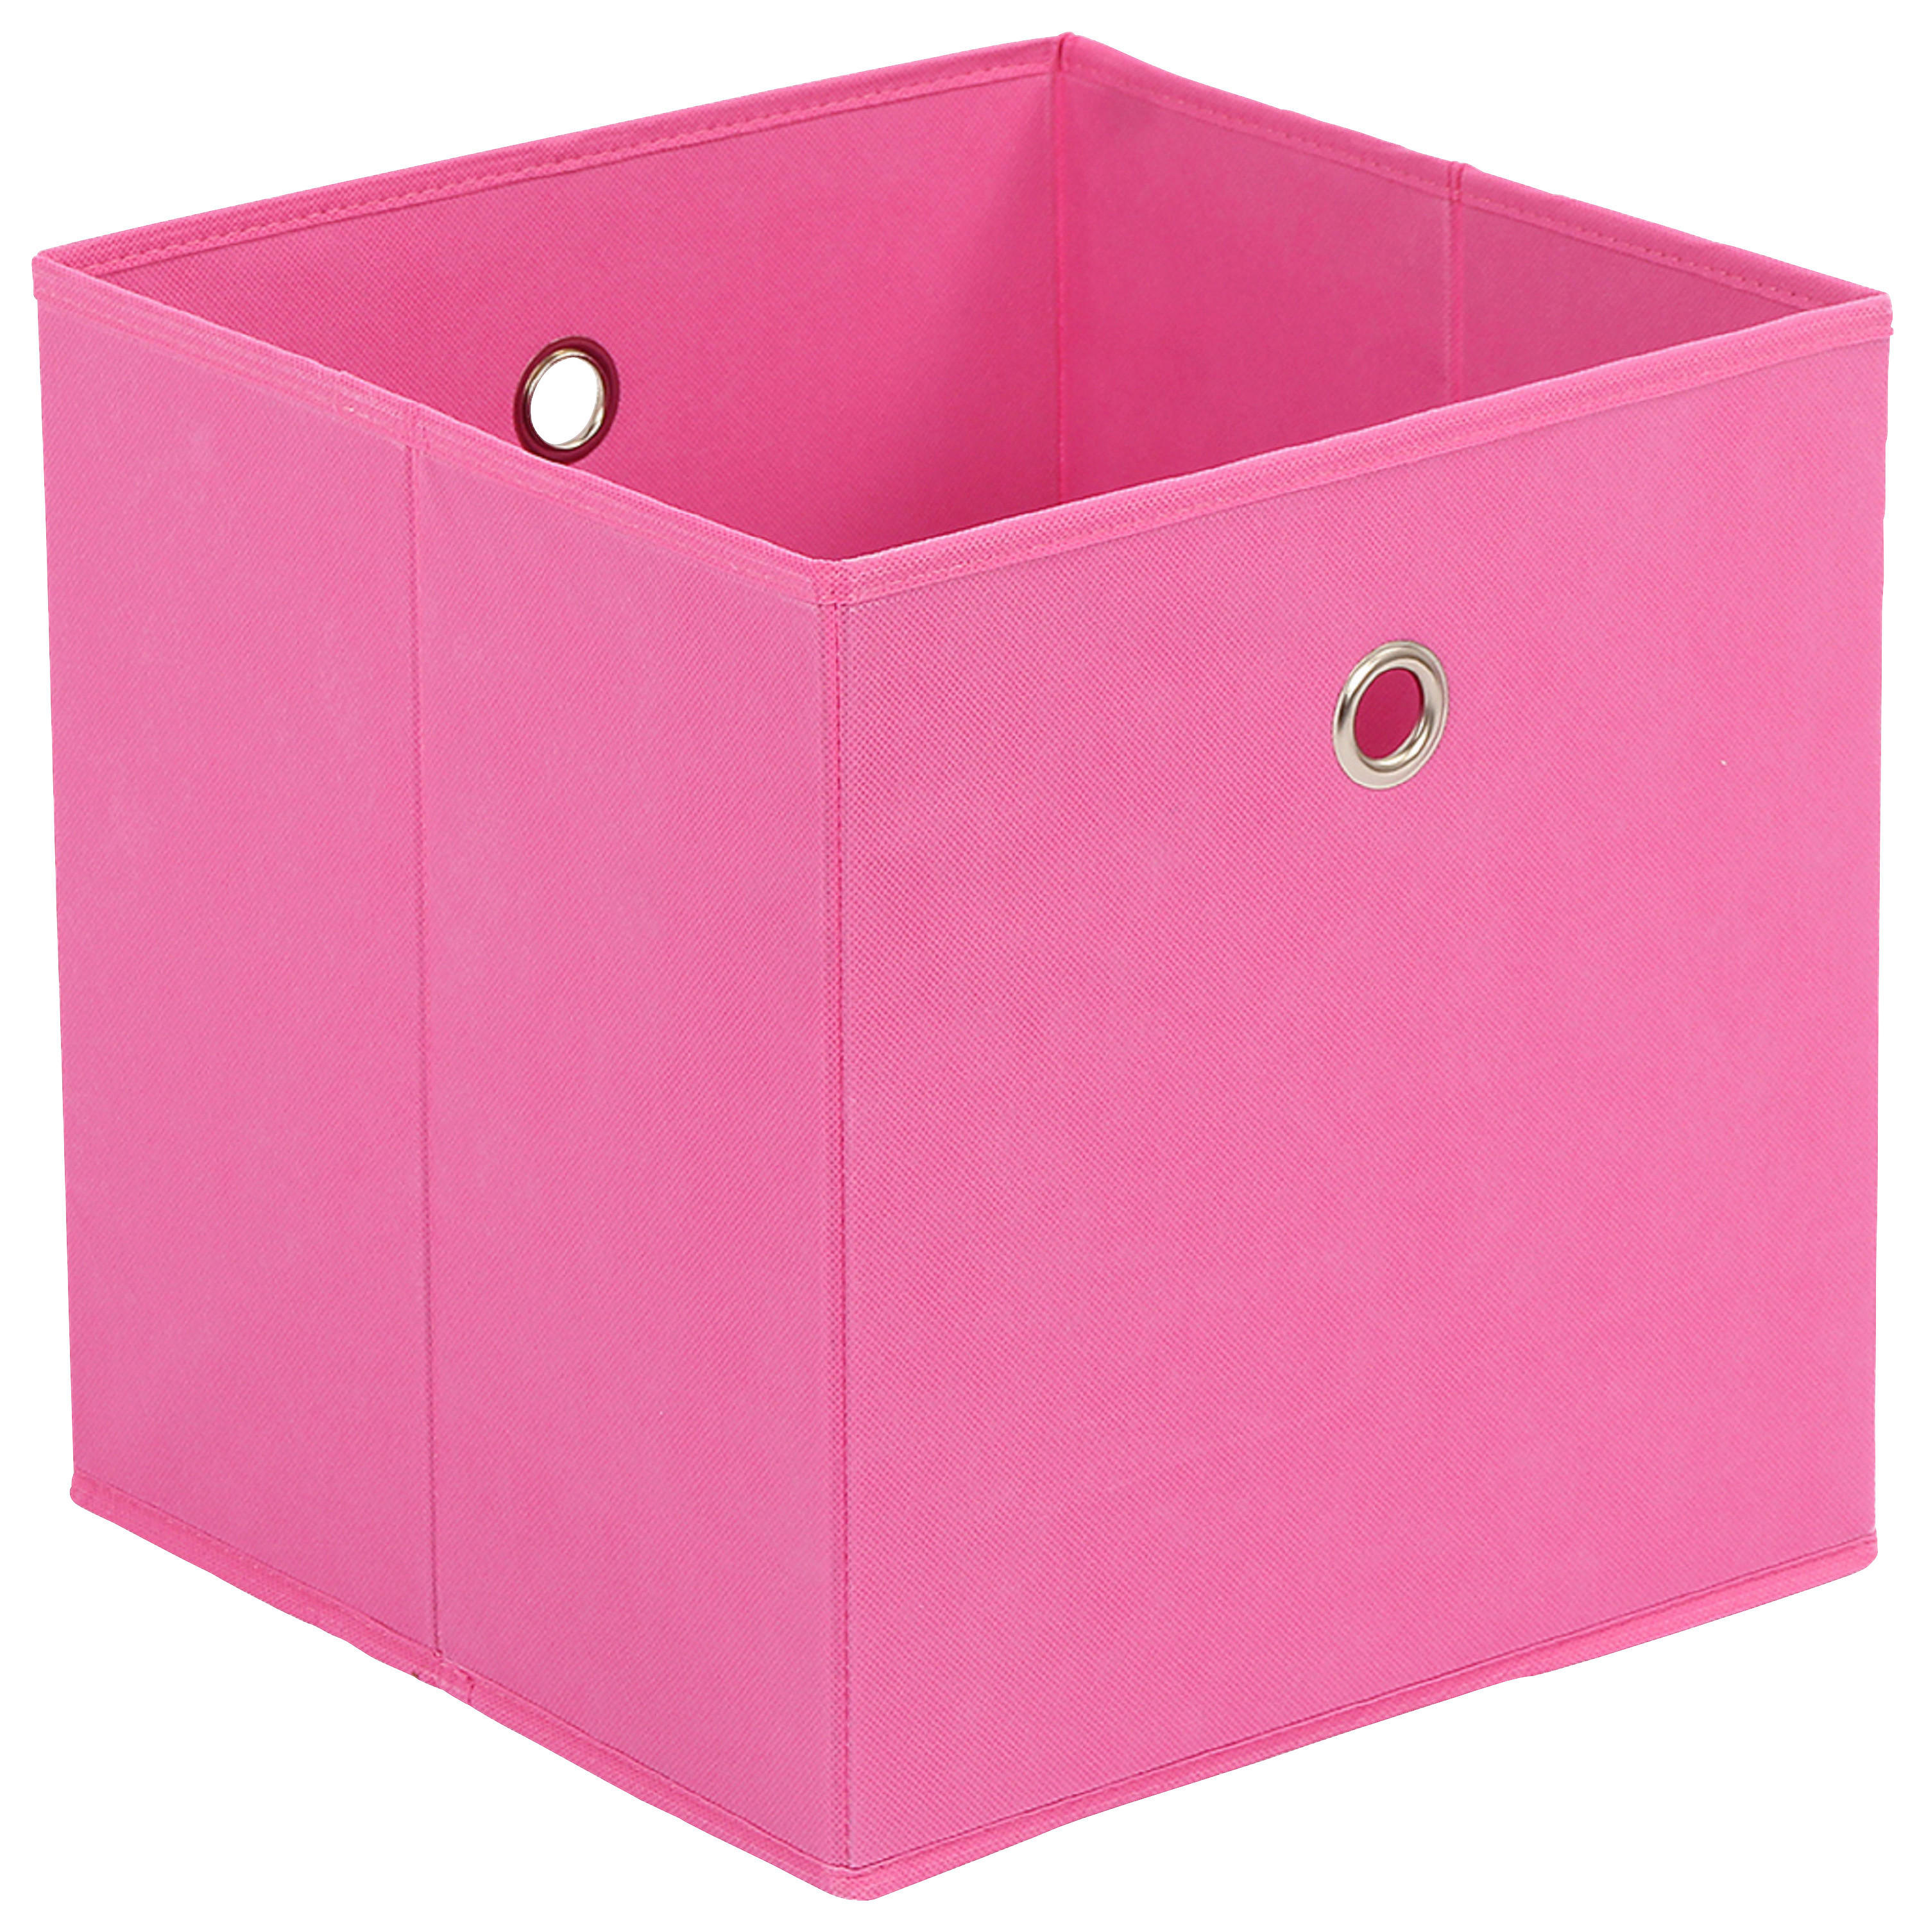 SKLADACÍ BOX, kov, textil, kartón, 32/32/32 cm - pink, Design, kartón/kov (32/32/32cm) - Carryhome